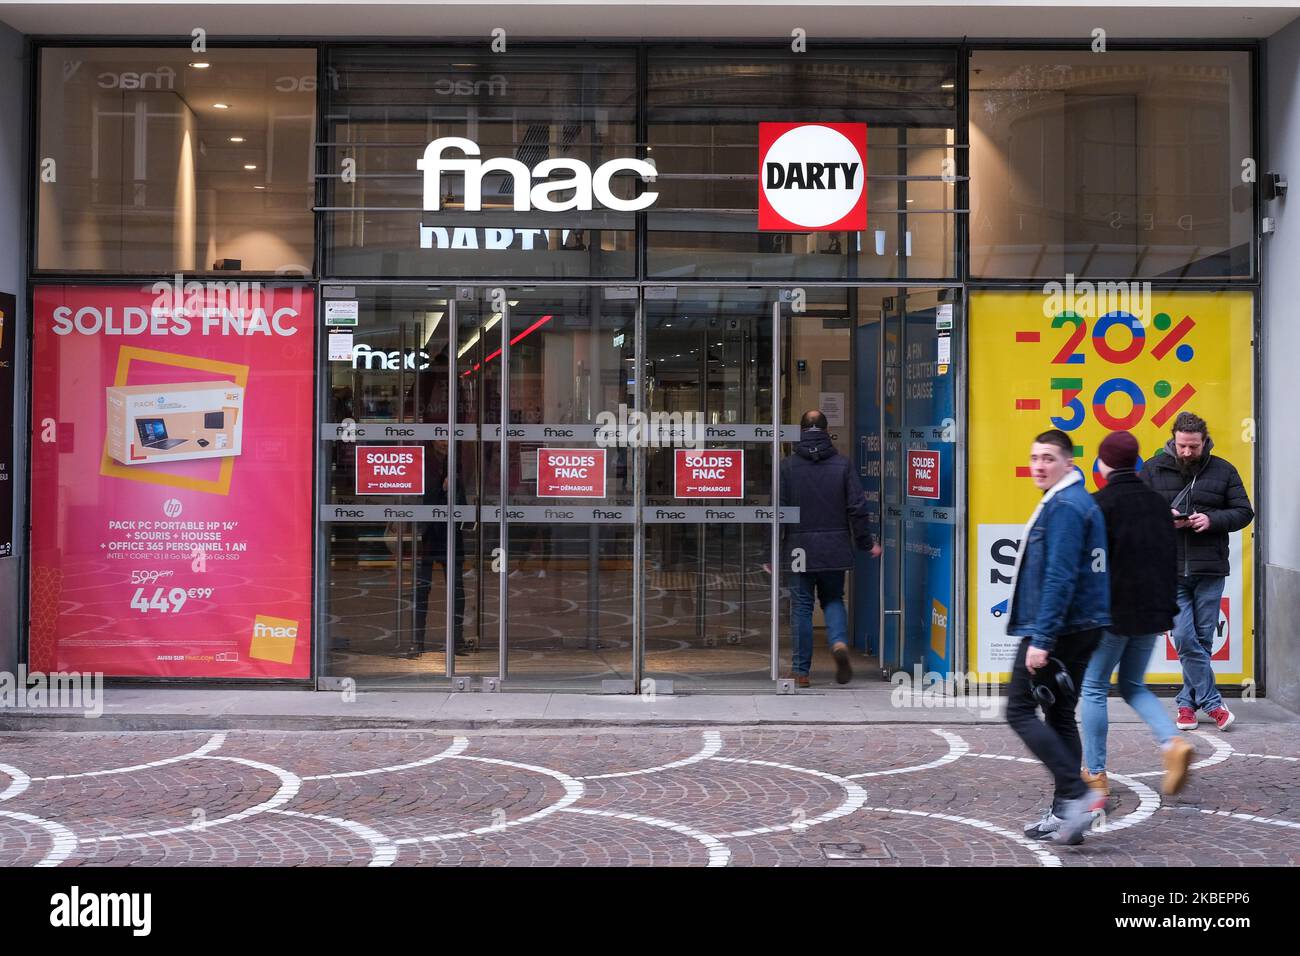 Am 7. Januar 2020 in Lille, Frankreich, laufen die Menschen an einem Bekleidungsgeschäft vorbei, in dem die Verkaufszahlen angekündigt werden. Nach einem Dekret des Wirtschafts- und Finanzministeriums vom Mai 2019, mit dem die Bilanzen durch eine Verkürzung wieder belebt werden sollen, dauerten die beiden jährlichen Verkaufszeiträume bis dahin sechs Wochen, aber ihre Laufzeit ist jetzt auf vier Wochen begrenzt. (Foto von Thierry Thorel/NurPhoto) Stockfoto